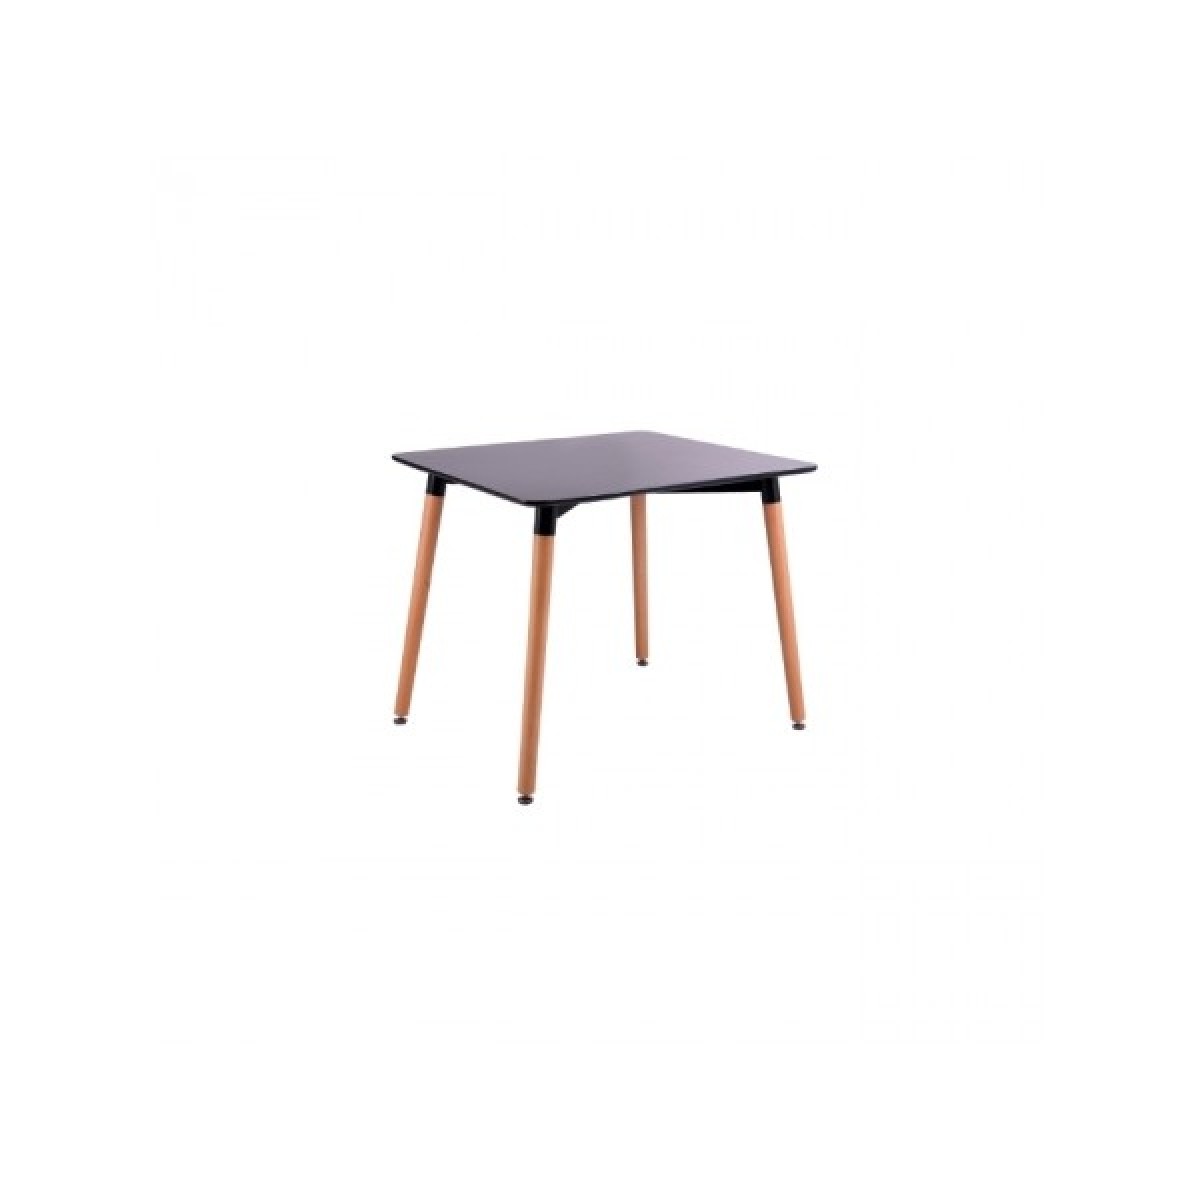 Τραπέζι Art ξύλινο 80Χ80 απο MDF σε μαύρο χρώμα και ξύλινα πόδια σε φυσικό χρώμα E7087.2